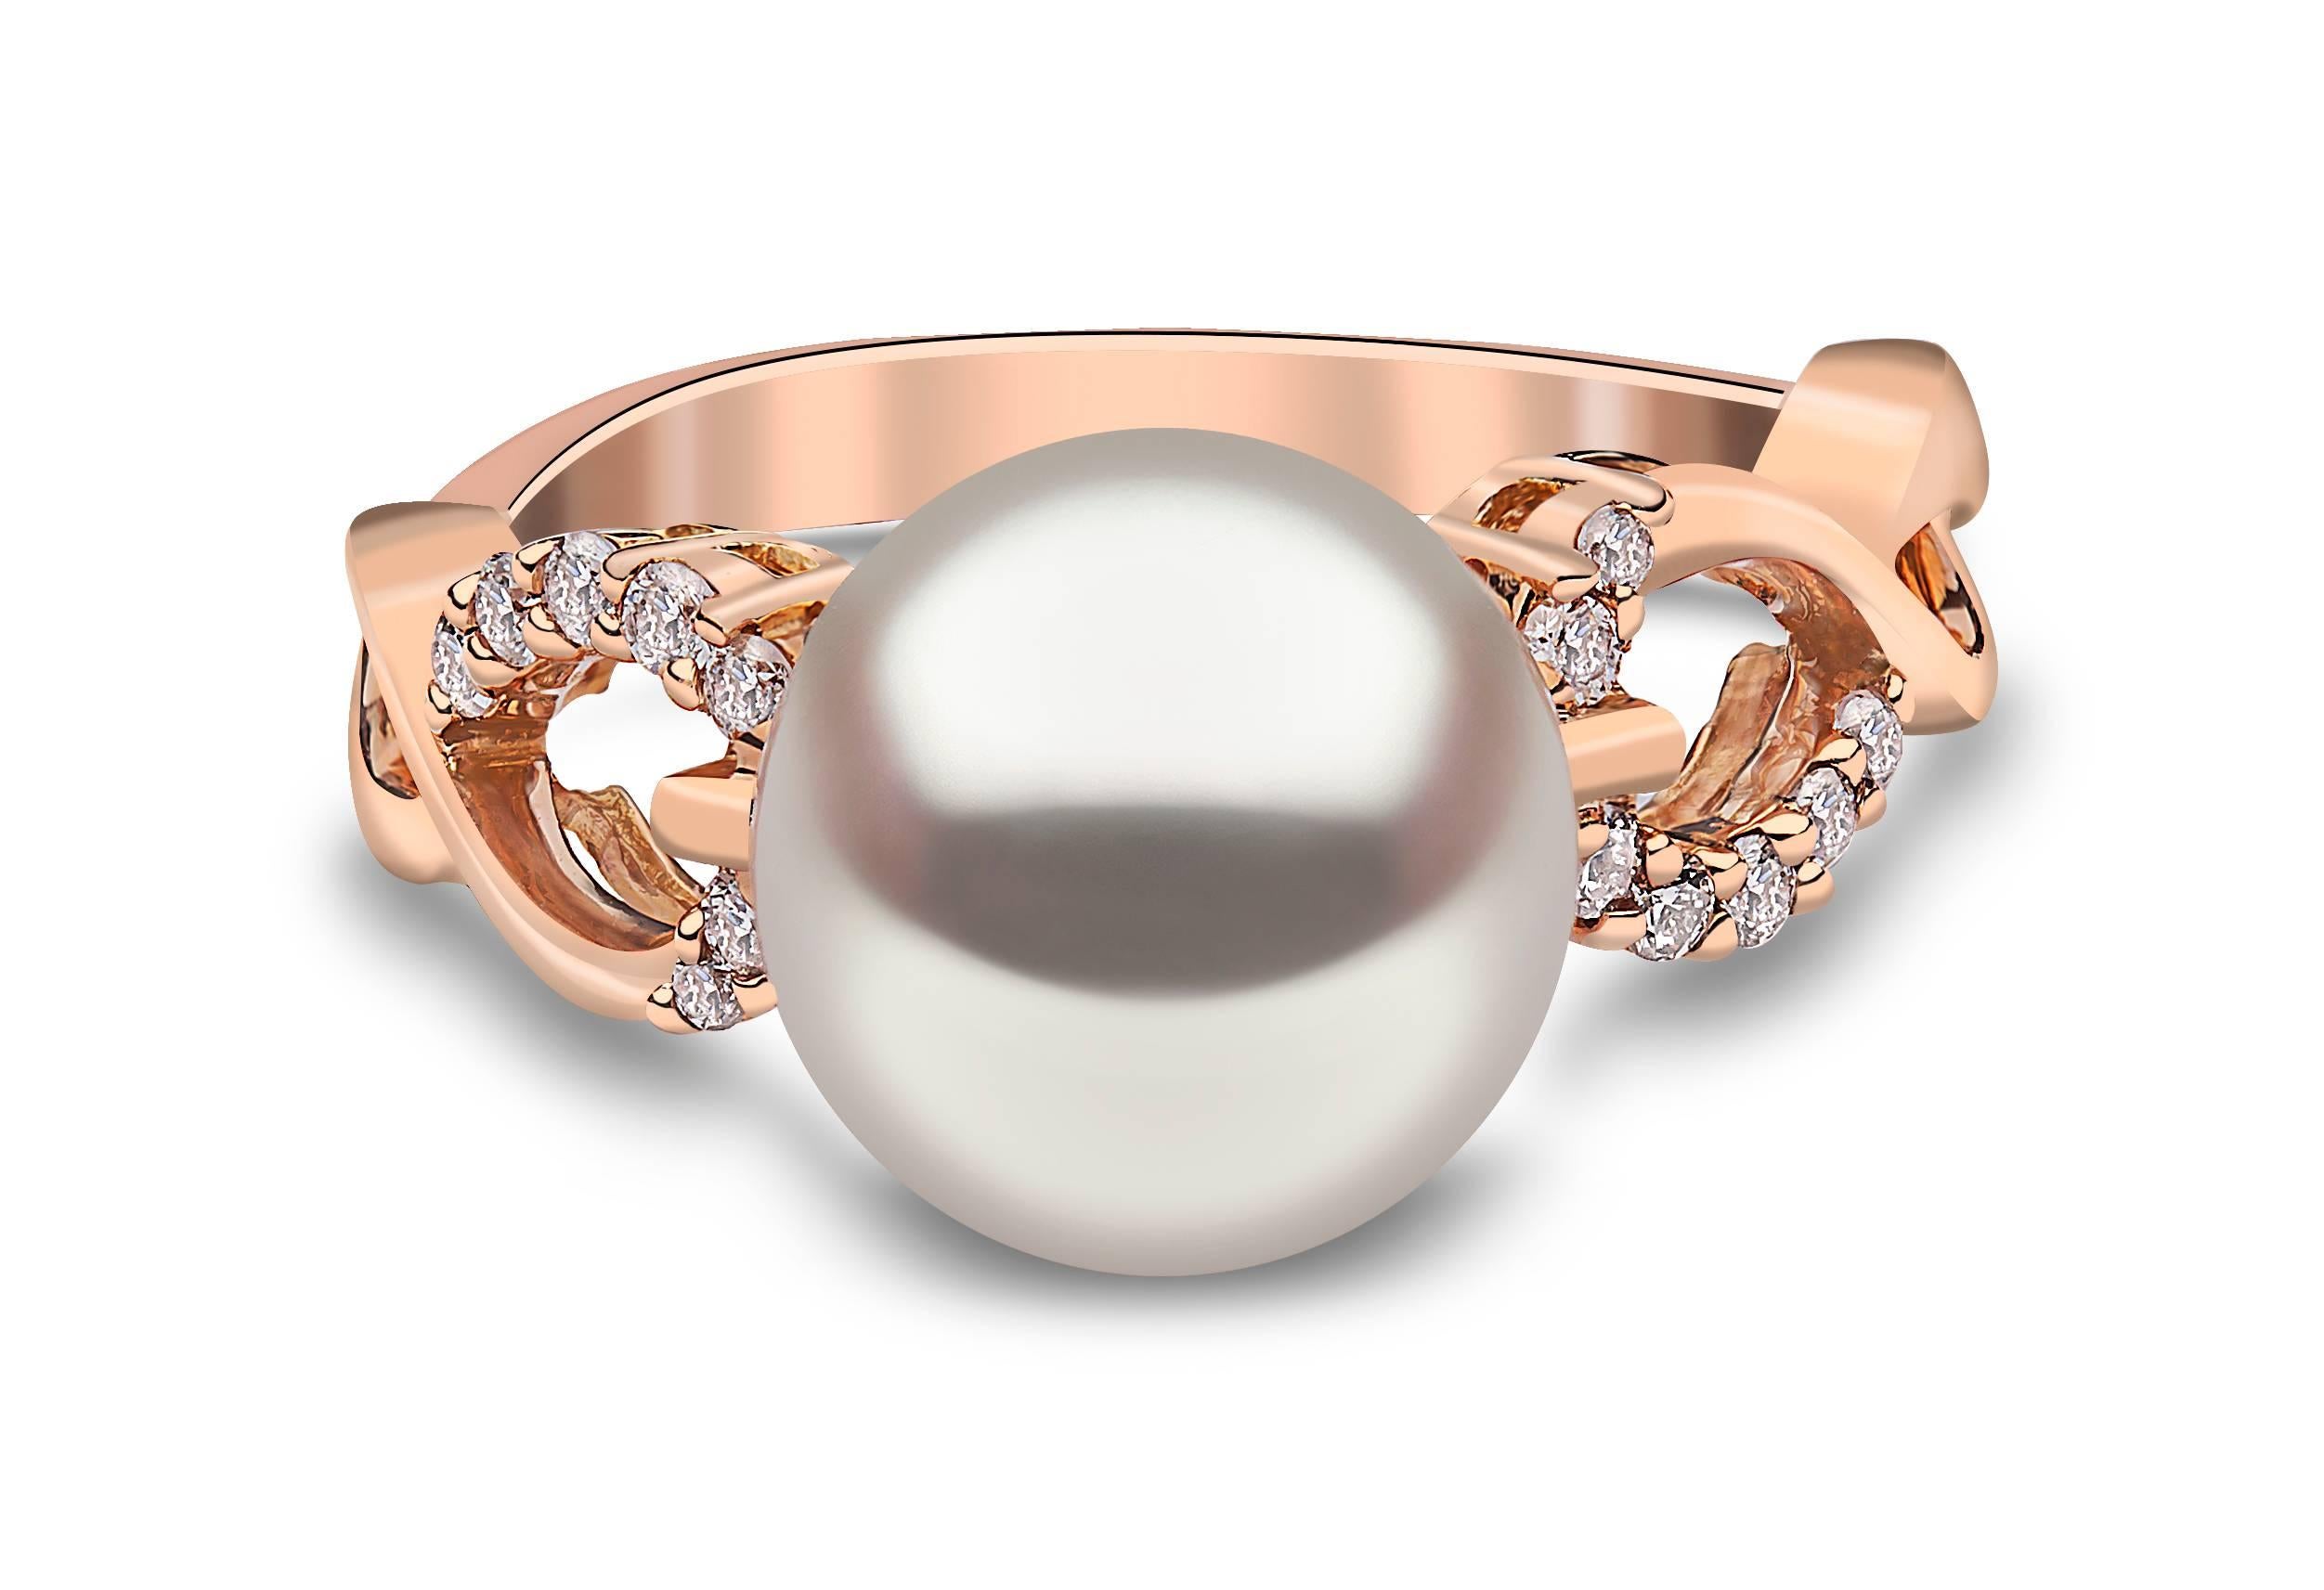 Bei diesem eleganten Ring von Yoko London steht eine schimmernde australische Südseeperle im Vordergrund und unterstreicht die außergewöhnliche Qualität des Materials. Die Perle ist in ein hübsches Muster aus verschlungenem 18 Karat Roségold